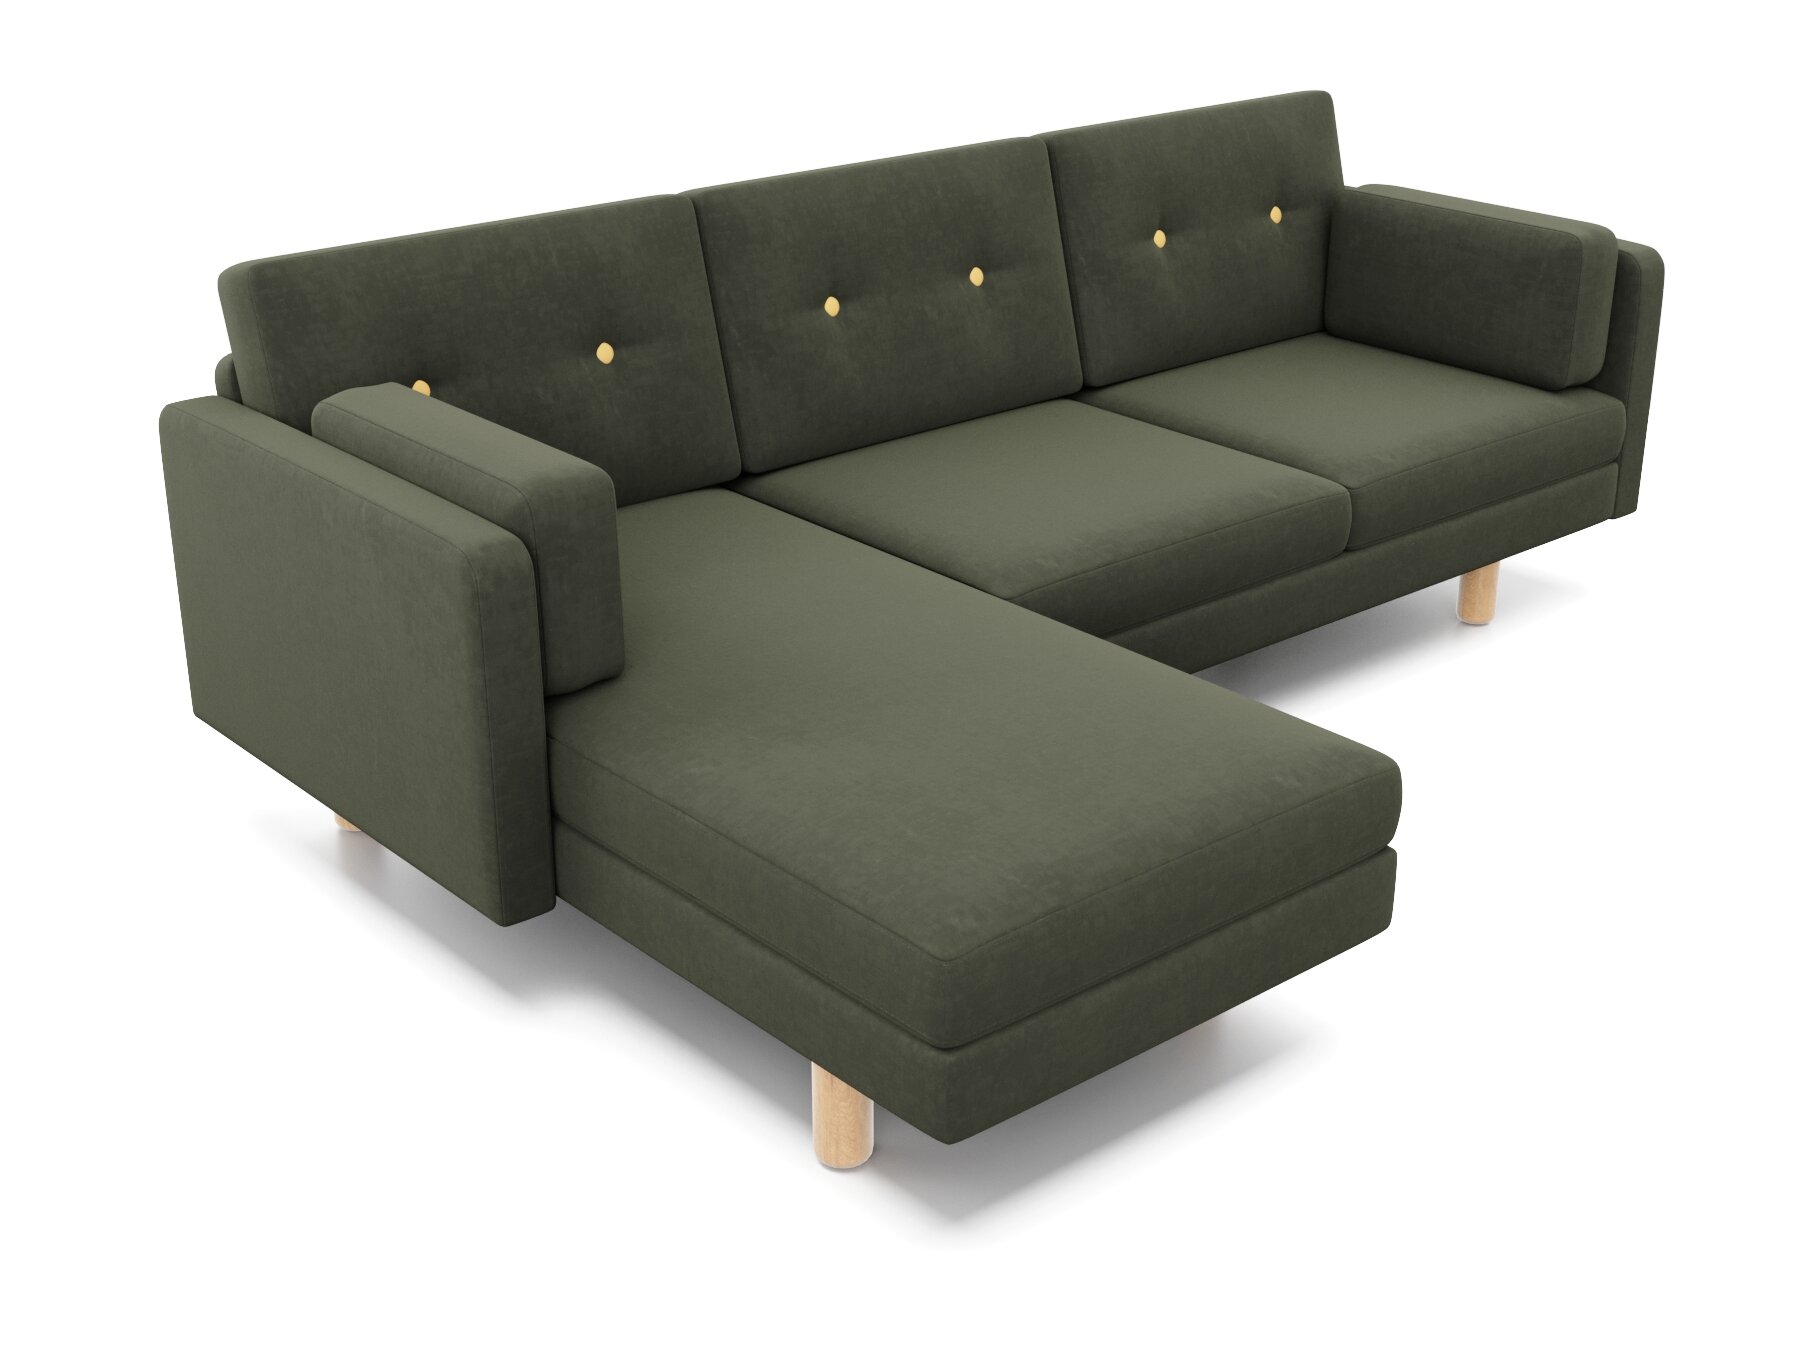 Угловой диван ингвар-у правый, зеленый, велюр, массив дерева, офисный, для кафе и бара, в гостиную, скандинавский лофт